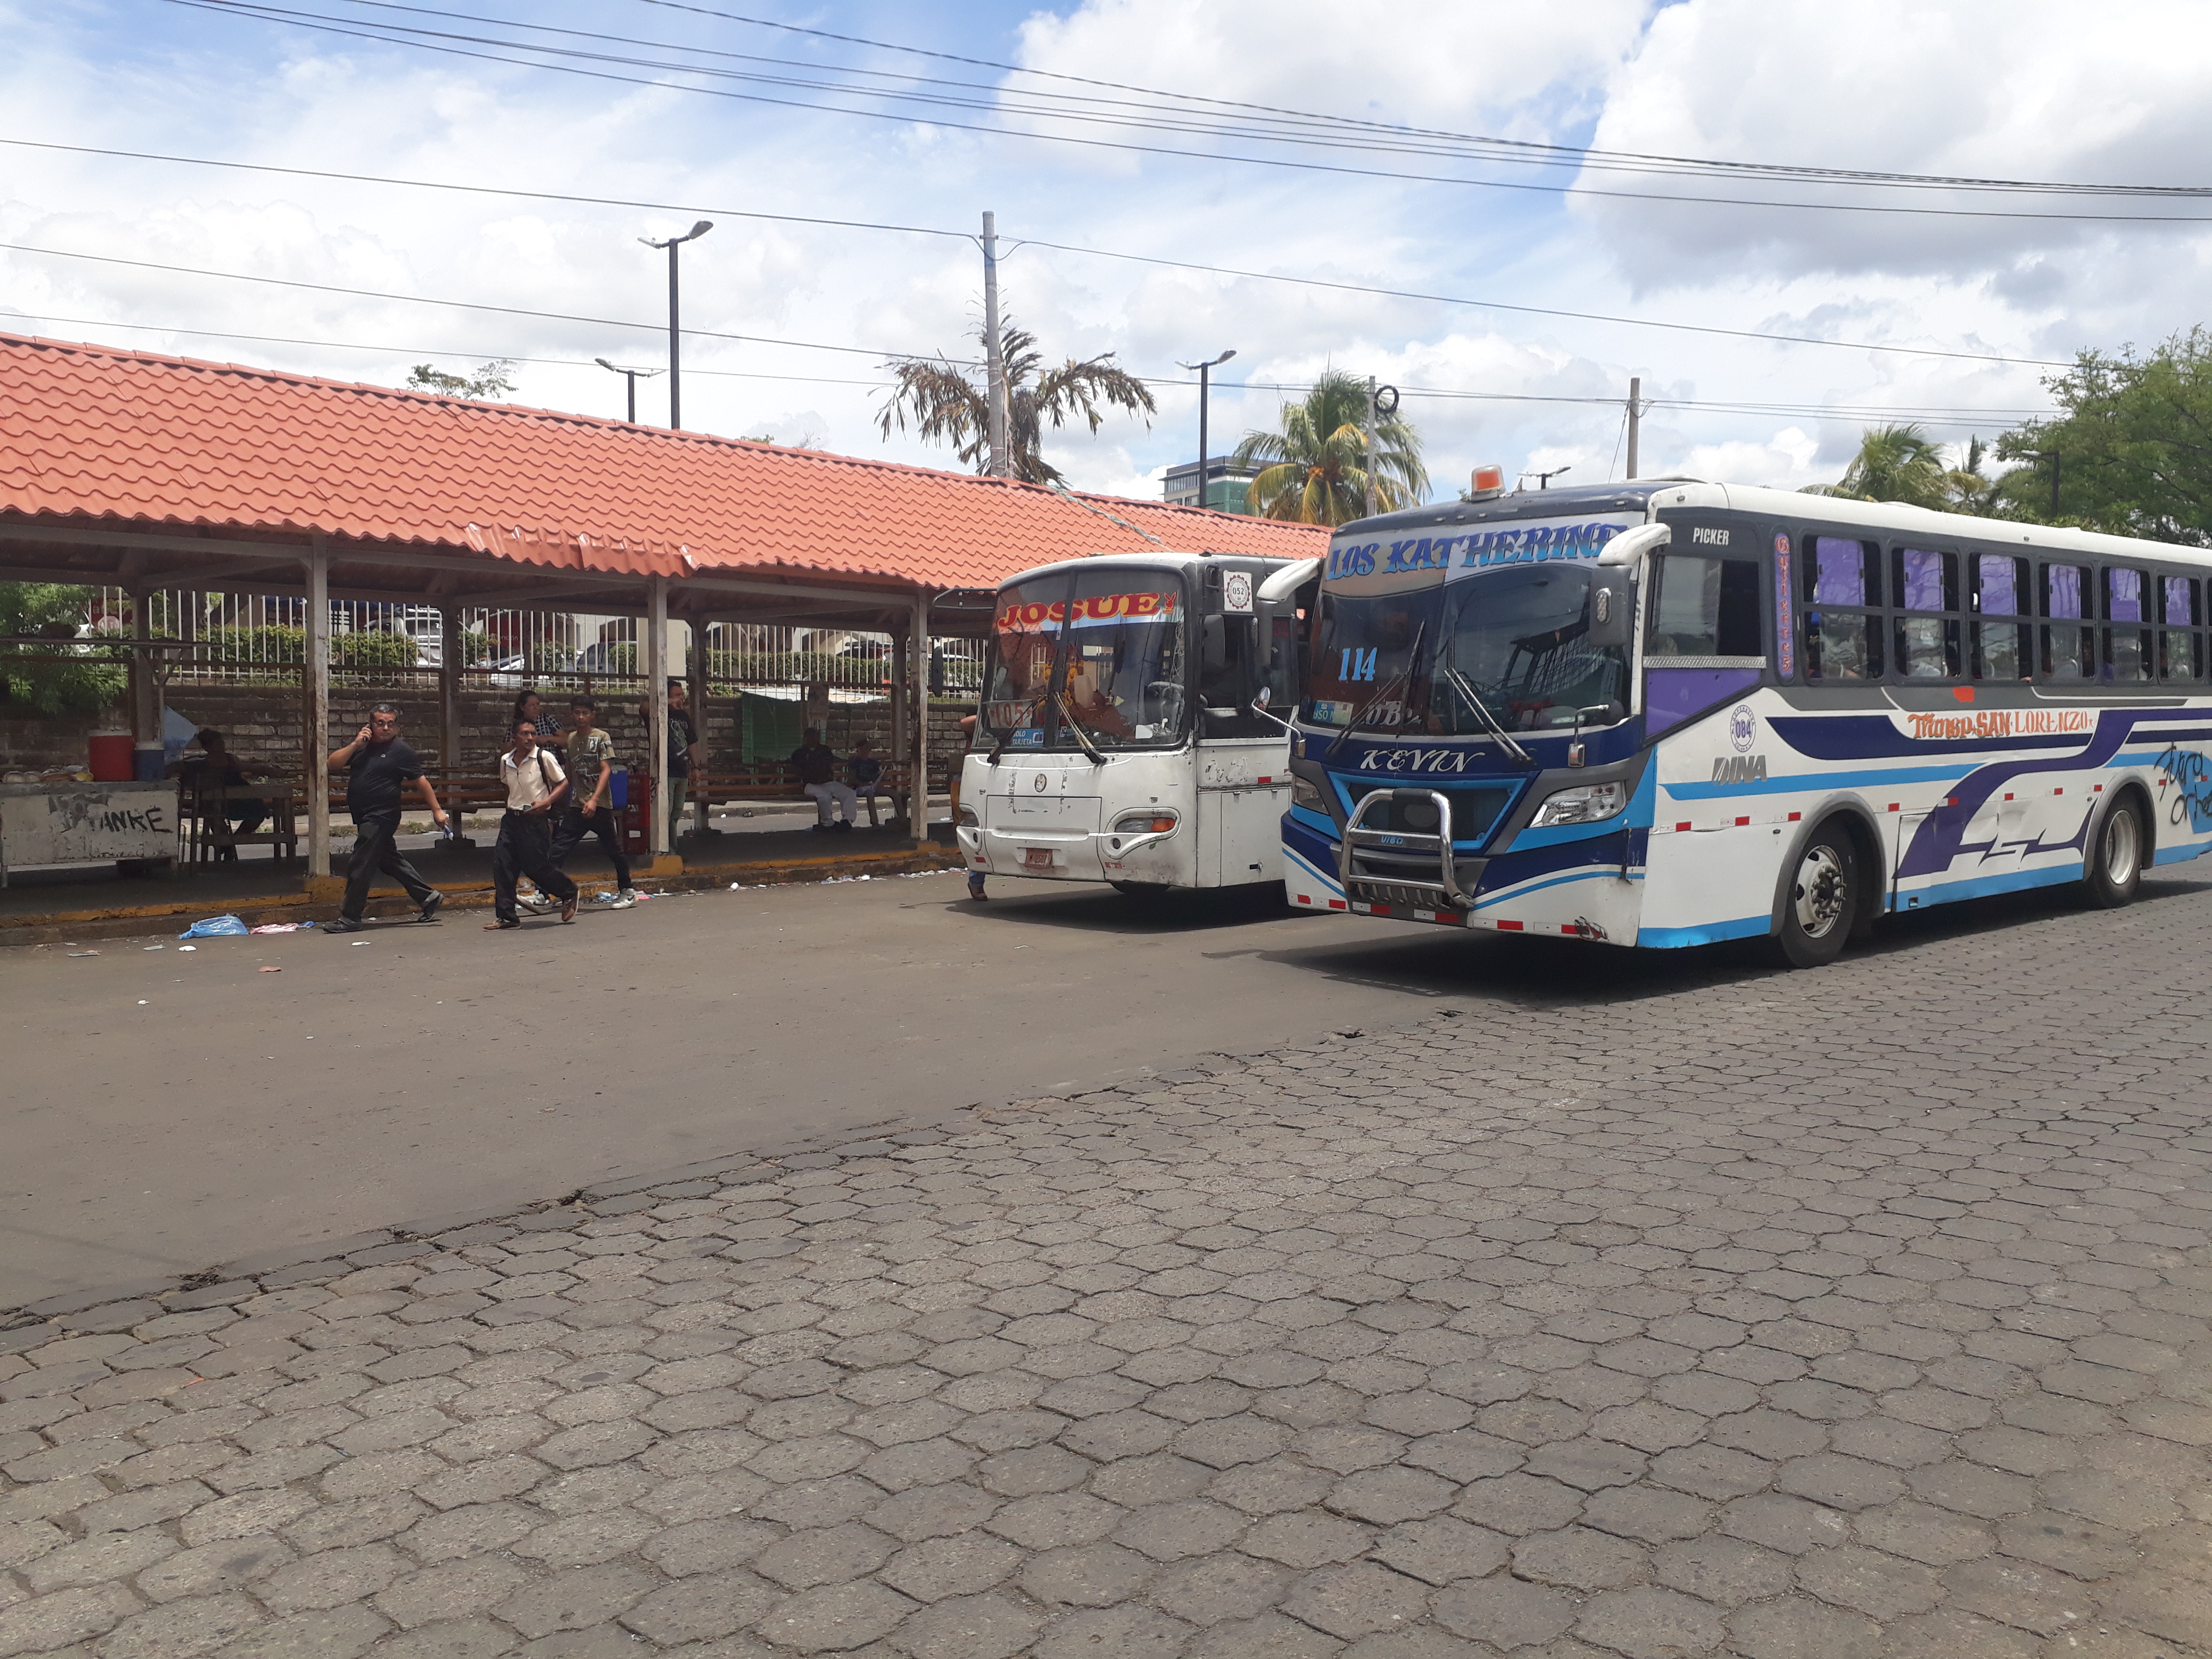 Buses del TUC en Managua trabajan hasta las 8 de la noche, según conductores. Foto: Michelle Polanco A.